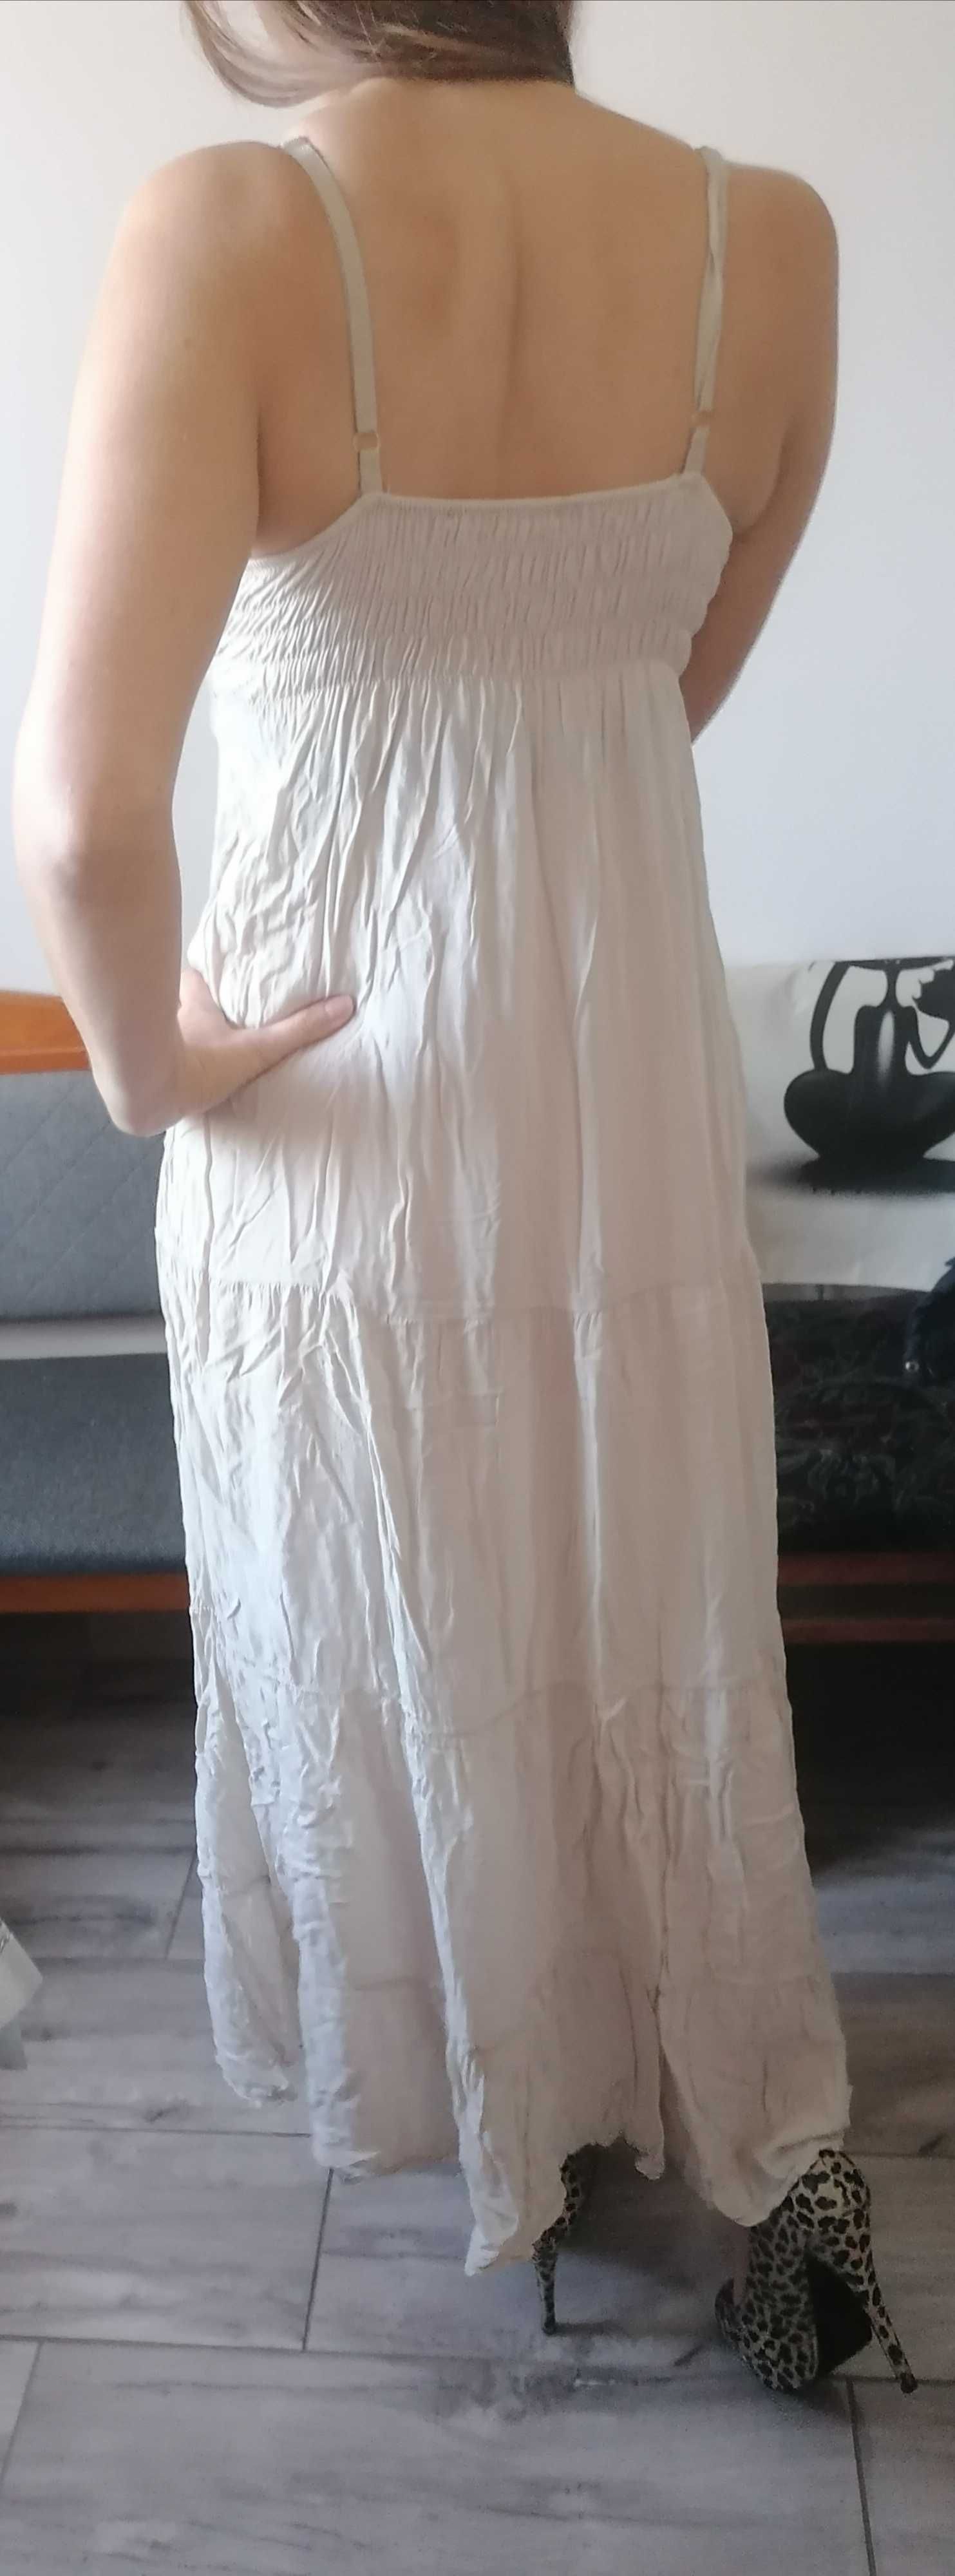 Wyjątkowa suknia sukienka S / M beżowa długa